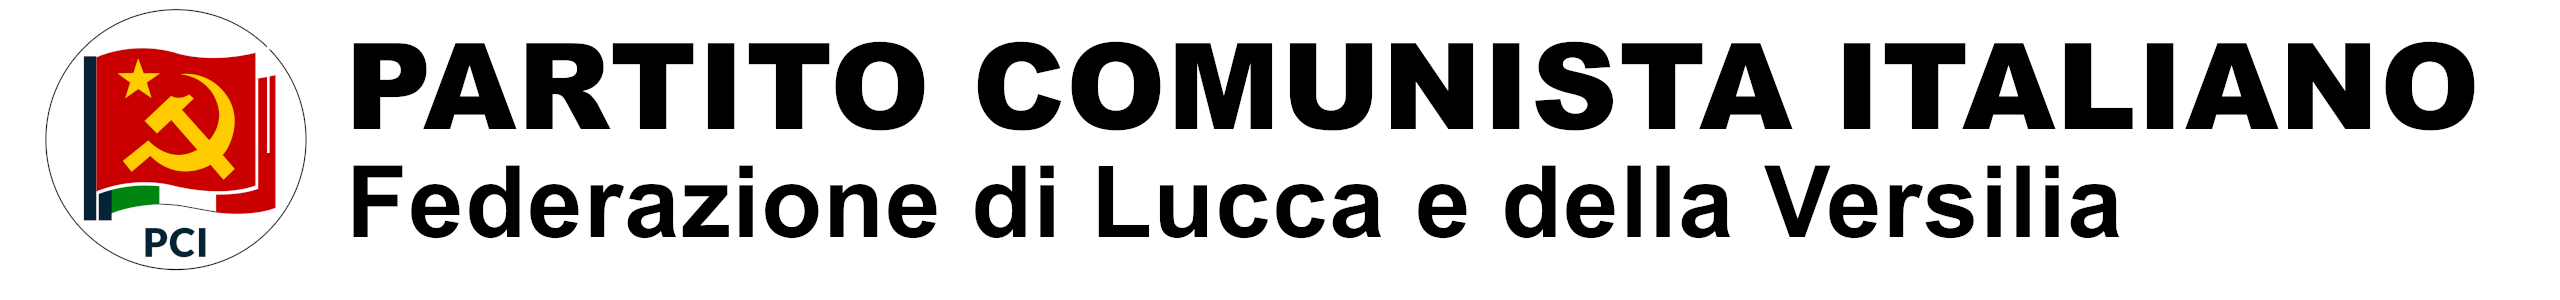 Partito Comunista Italiano - Federazione di Lucca e Versilia